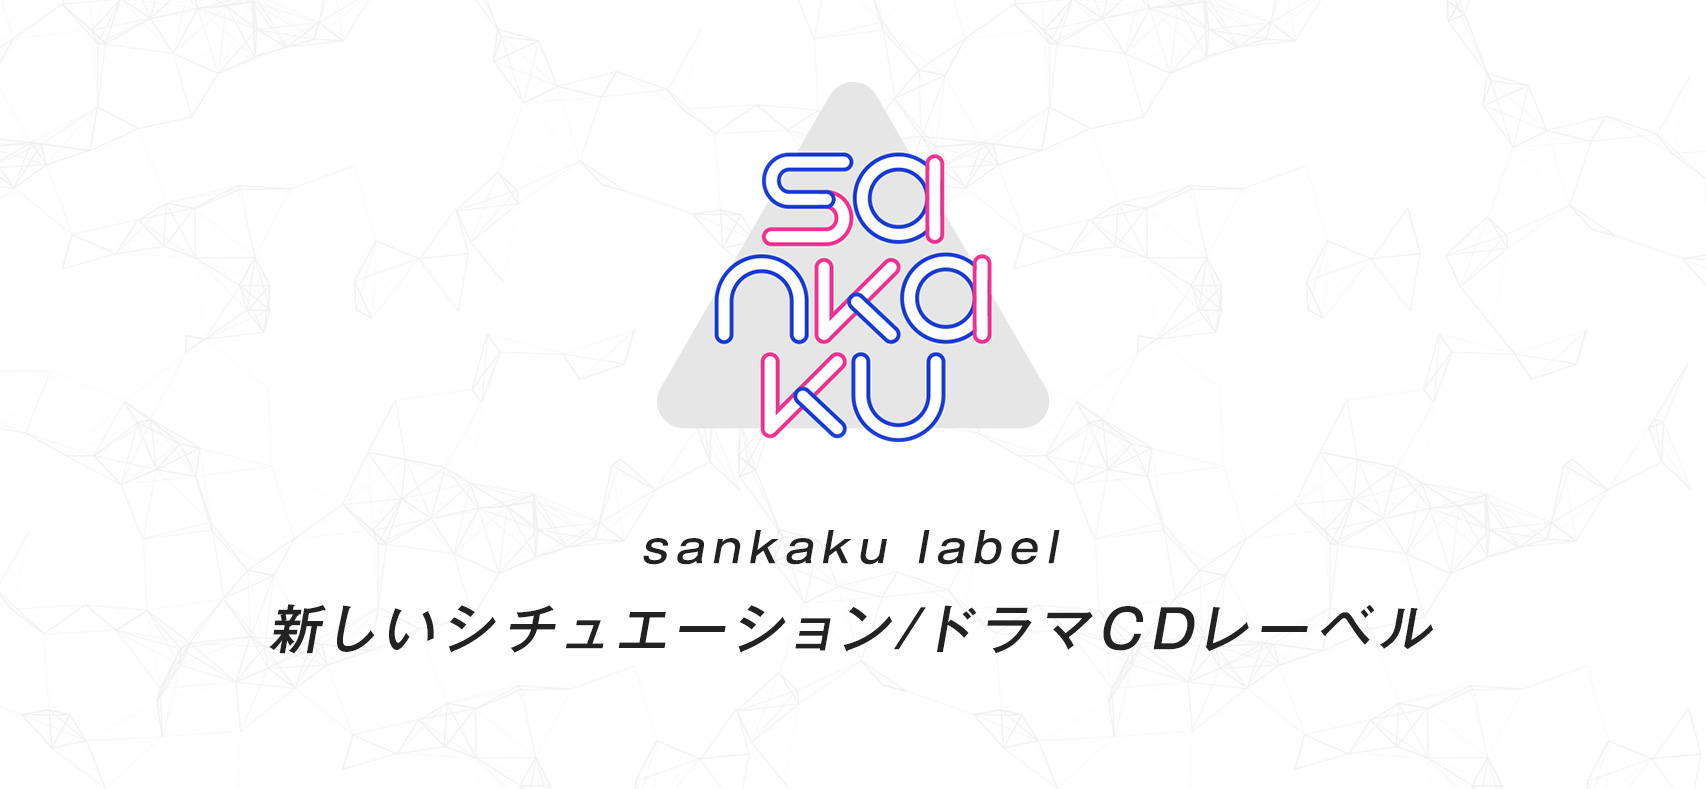 sankaku label